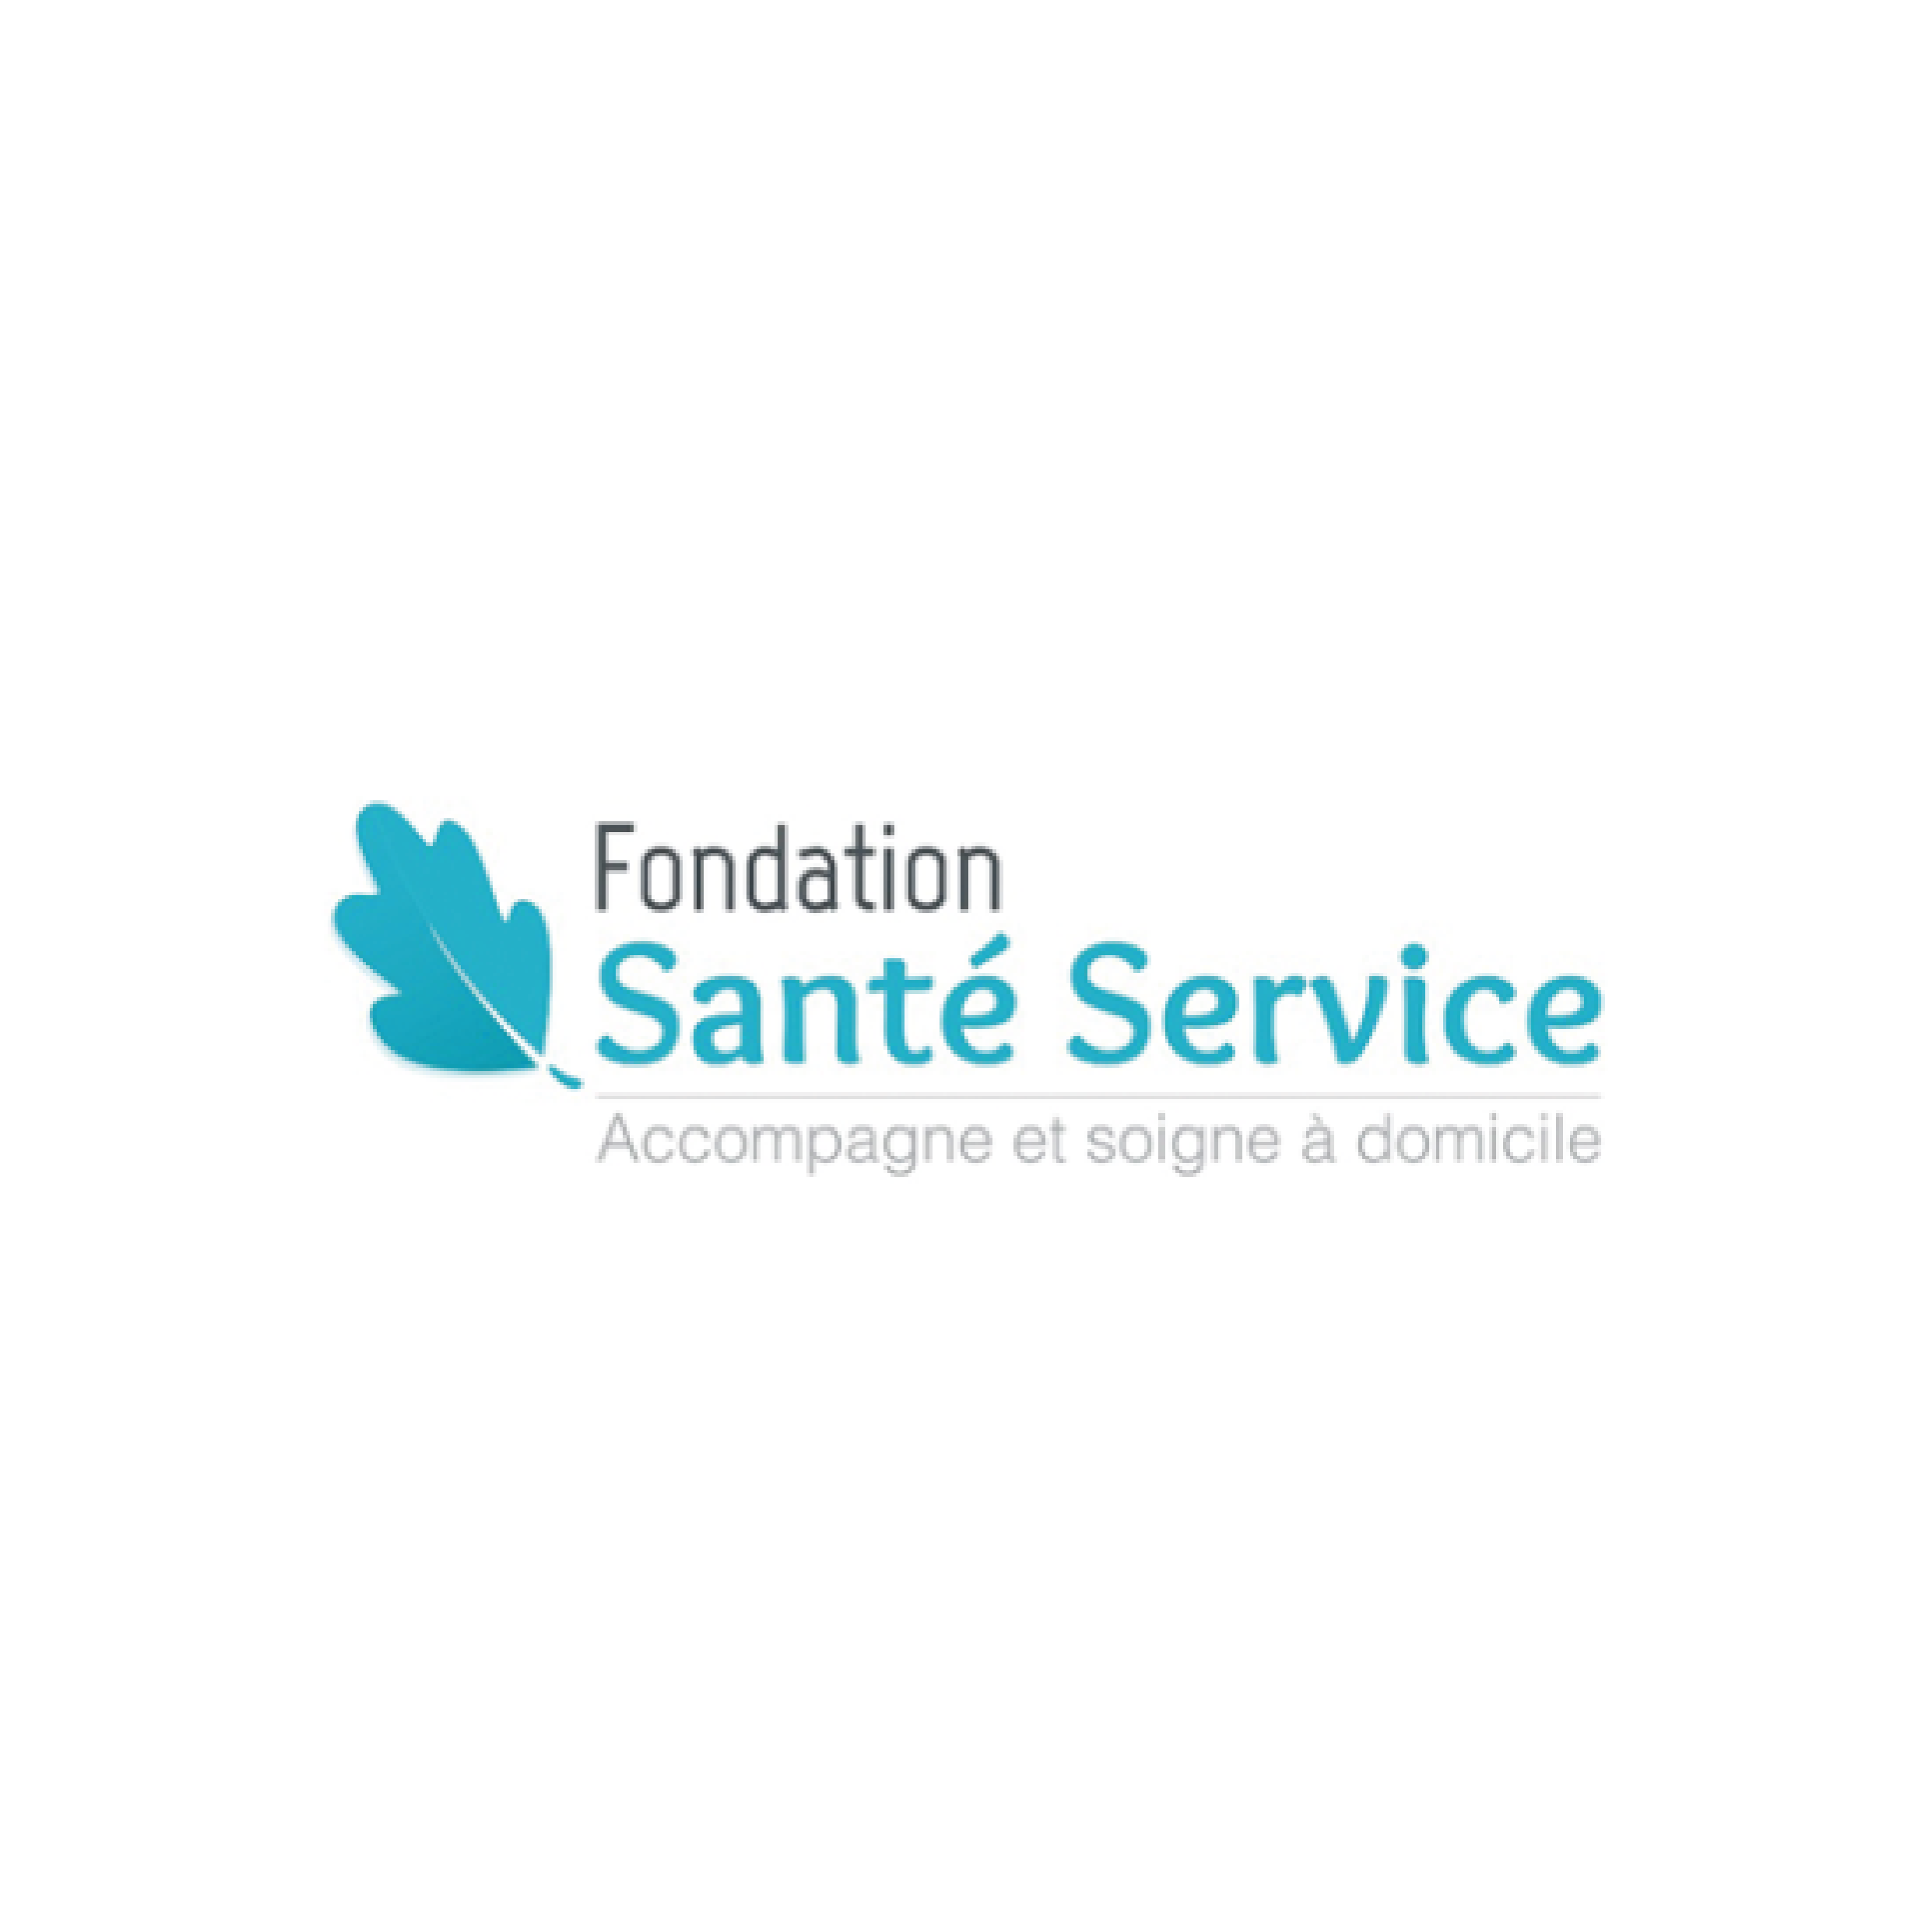 Il s'agit du logo pour la Fondation Santé Service